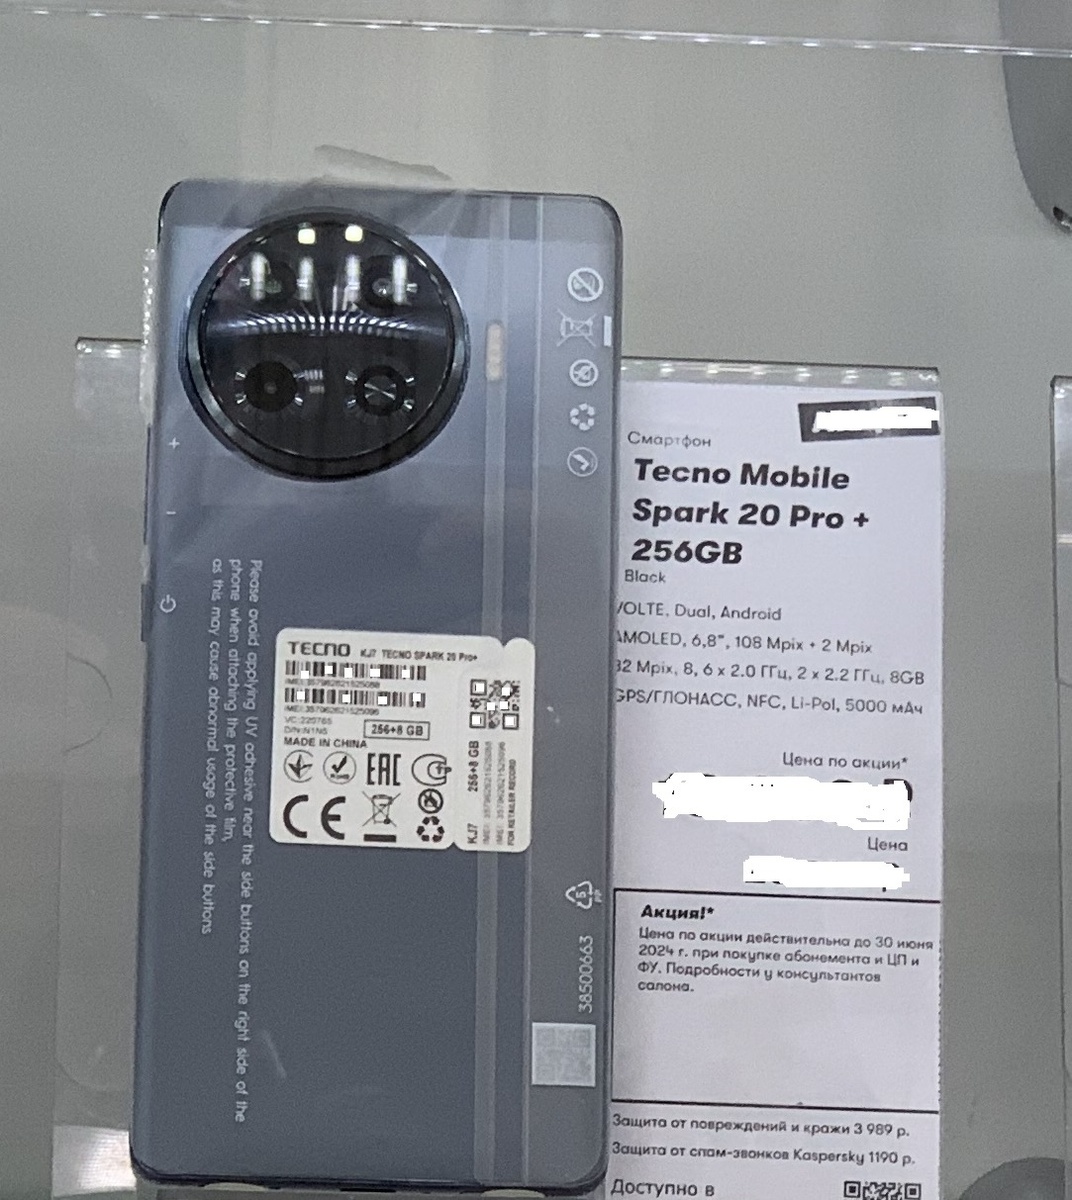 Сегодня мы рассмотрим и сравним два смартфона от брендов realme и Tecno Mobile. Подробнее взглянем на их функциональные особенности и сделаем выводы. Смартфон выполнен в корпусе из пластика.-2